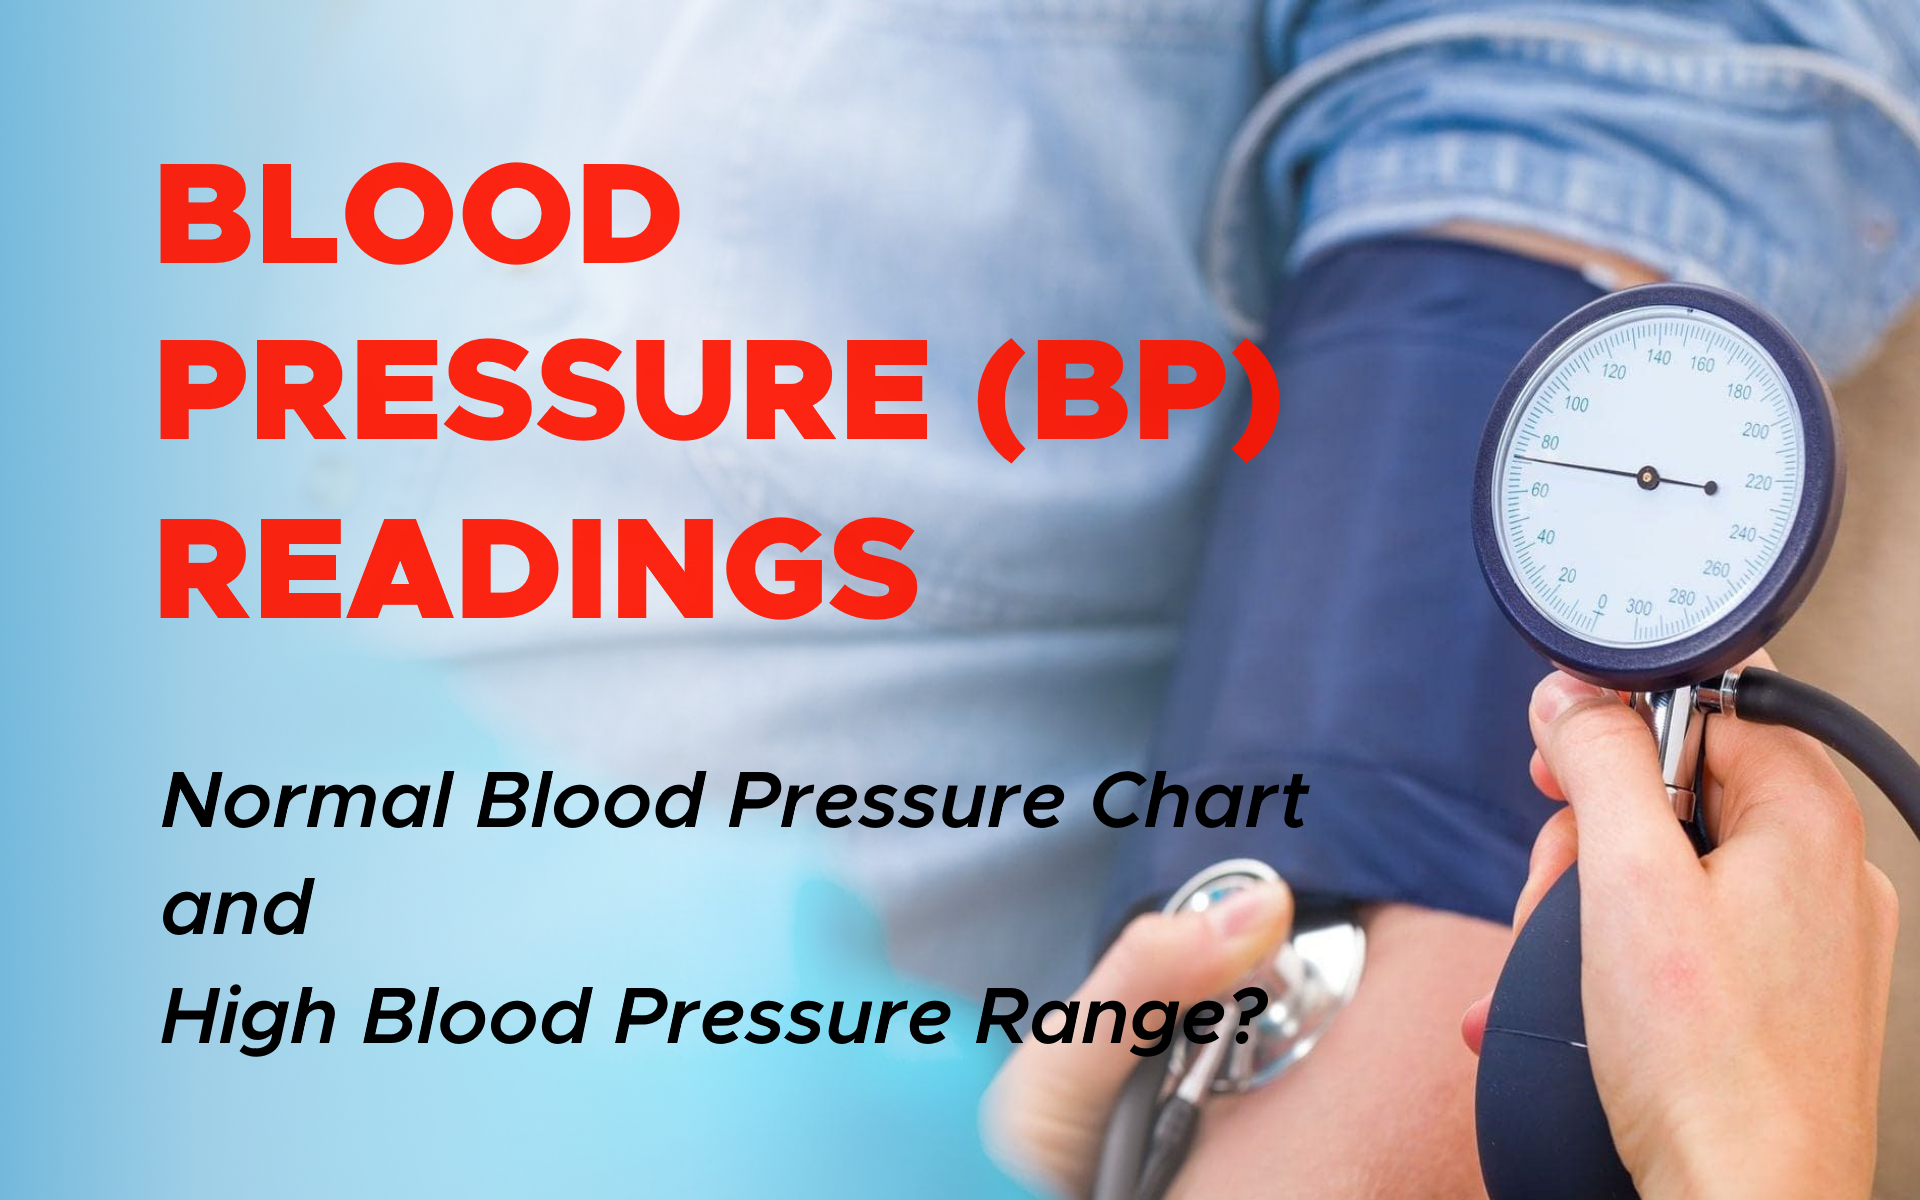 Understanding Blood Pressure (BP) Readings: What is the High Blood Pressure Range?